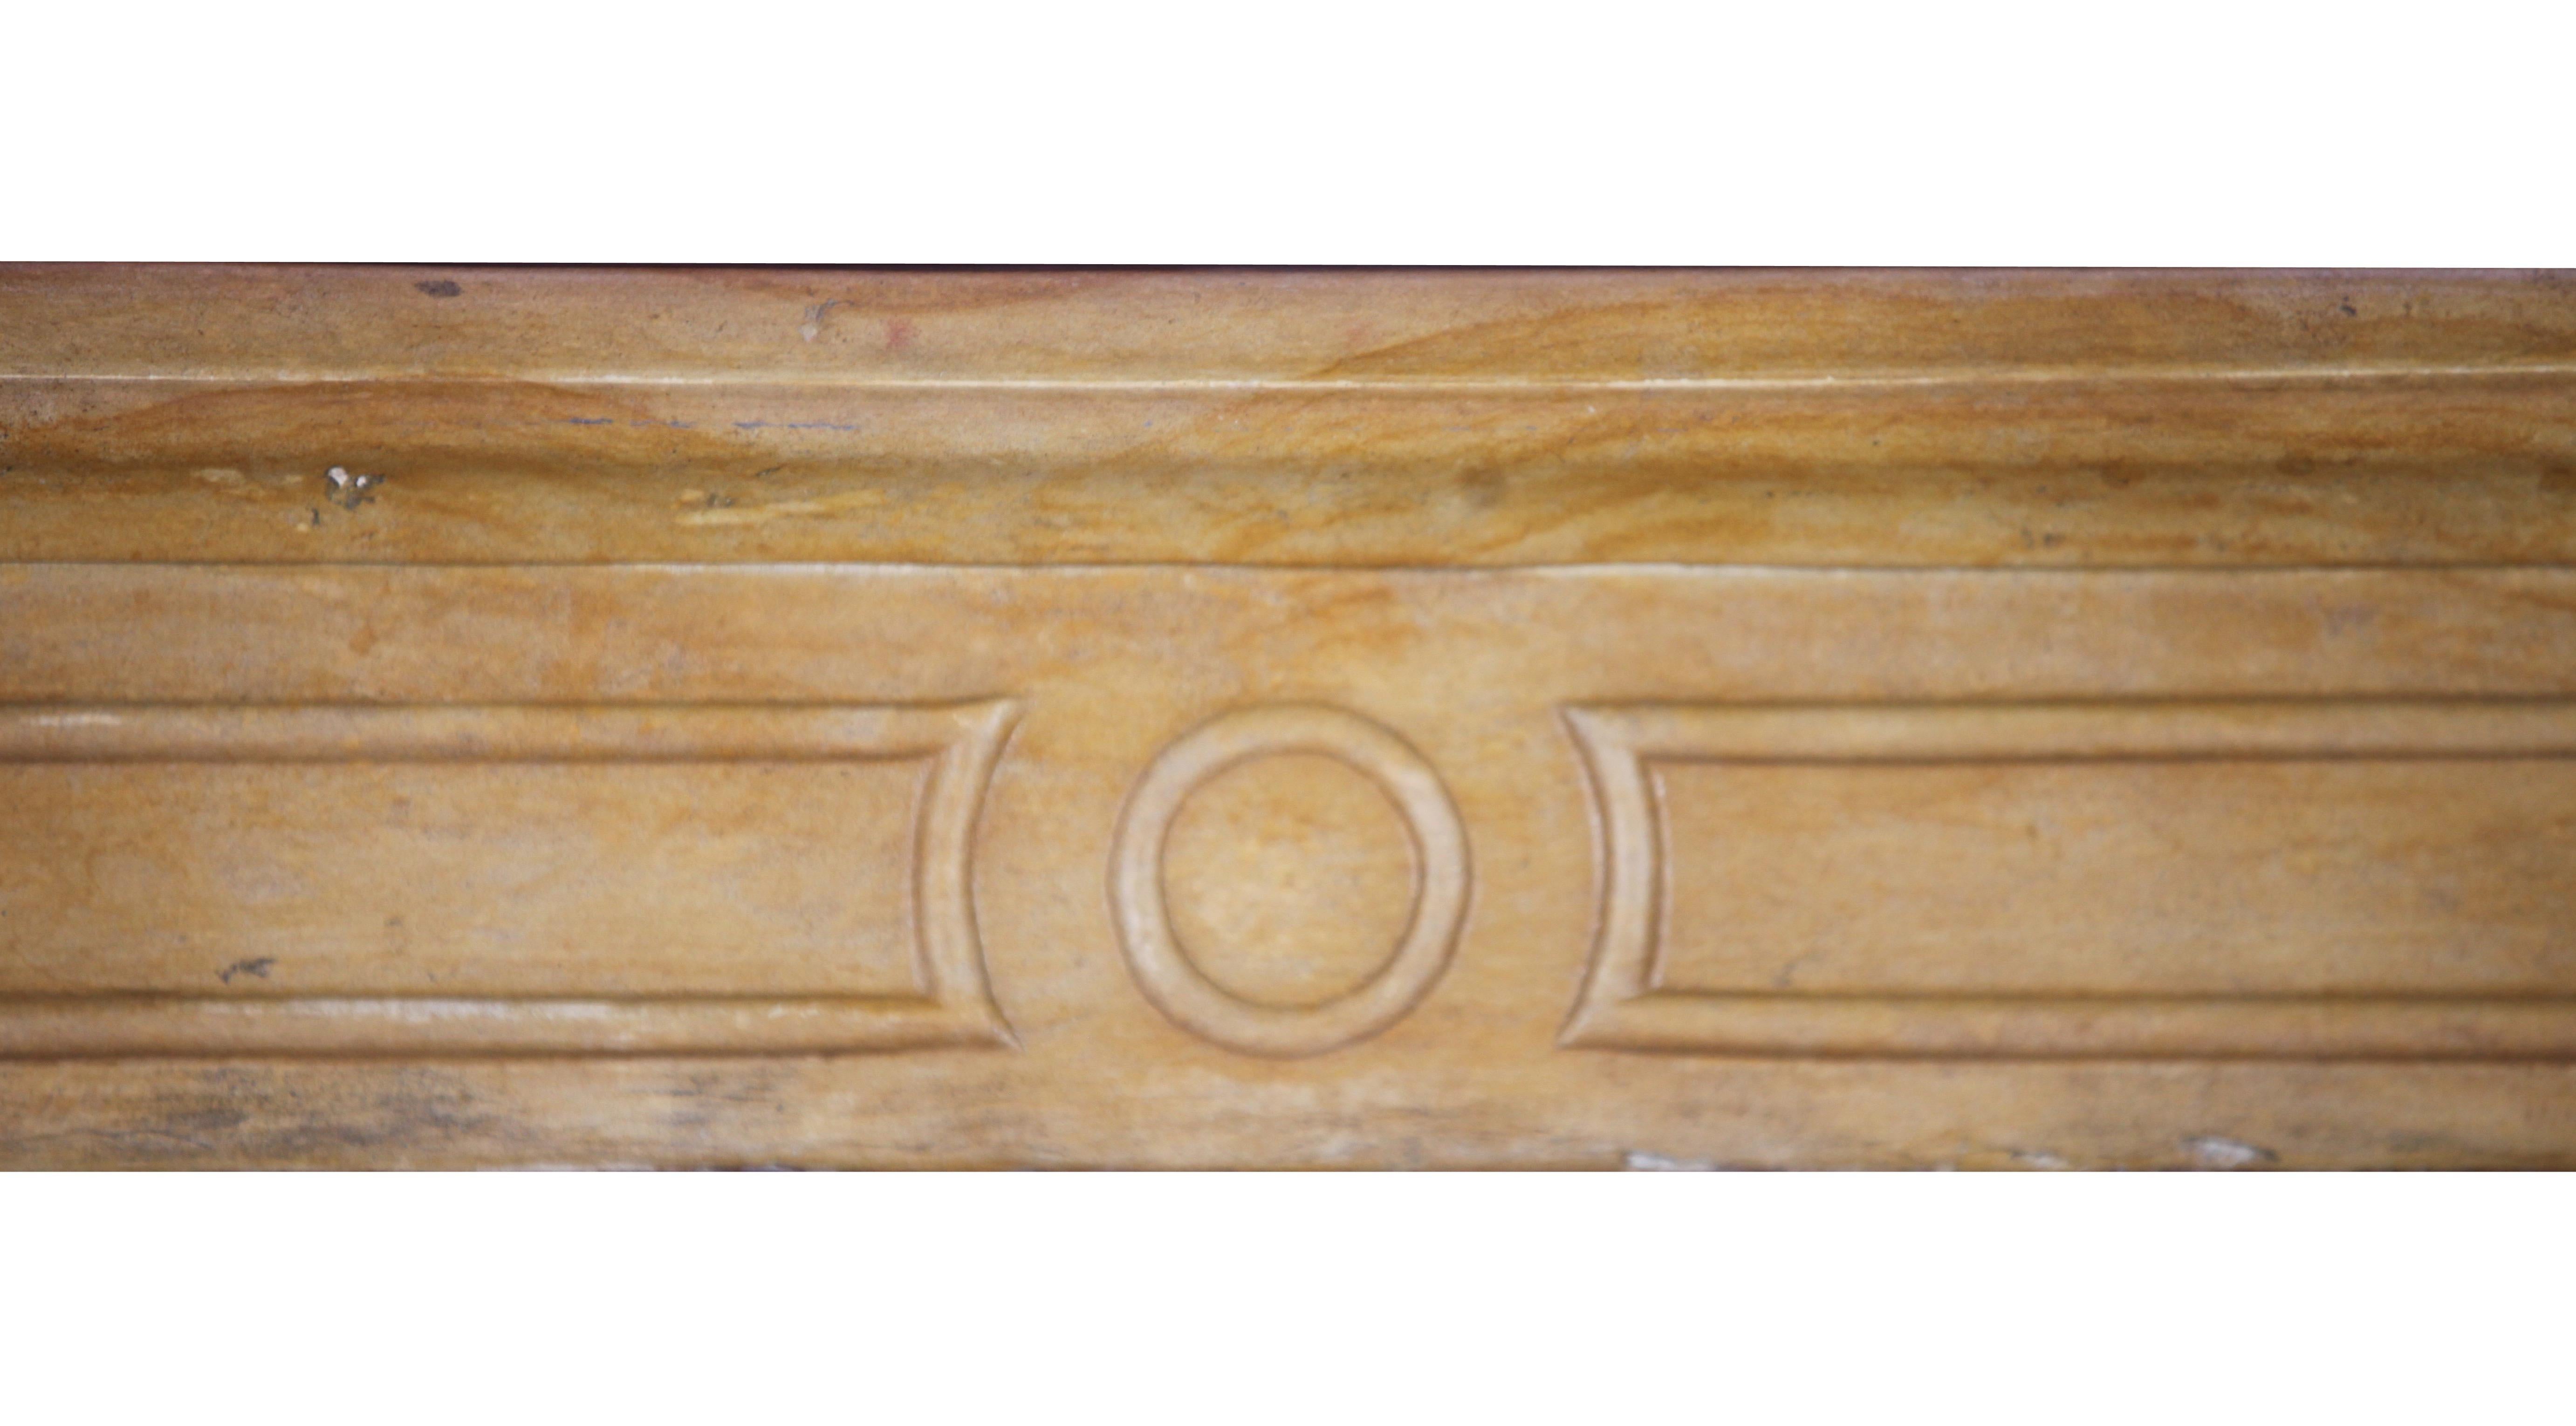 Un petit encadrement de cheminée vintage, fin et délicat, de style Louis XVI du début du 19e siècle. La pierre calcaire dure de couleur miel de Bourgogne est polie et offre une sensation soyeuse au toucher.
Mesures :
122 cm de largeur extérieure